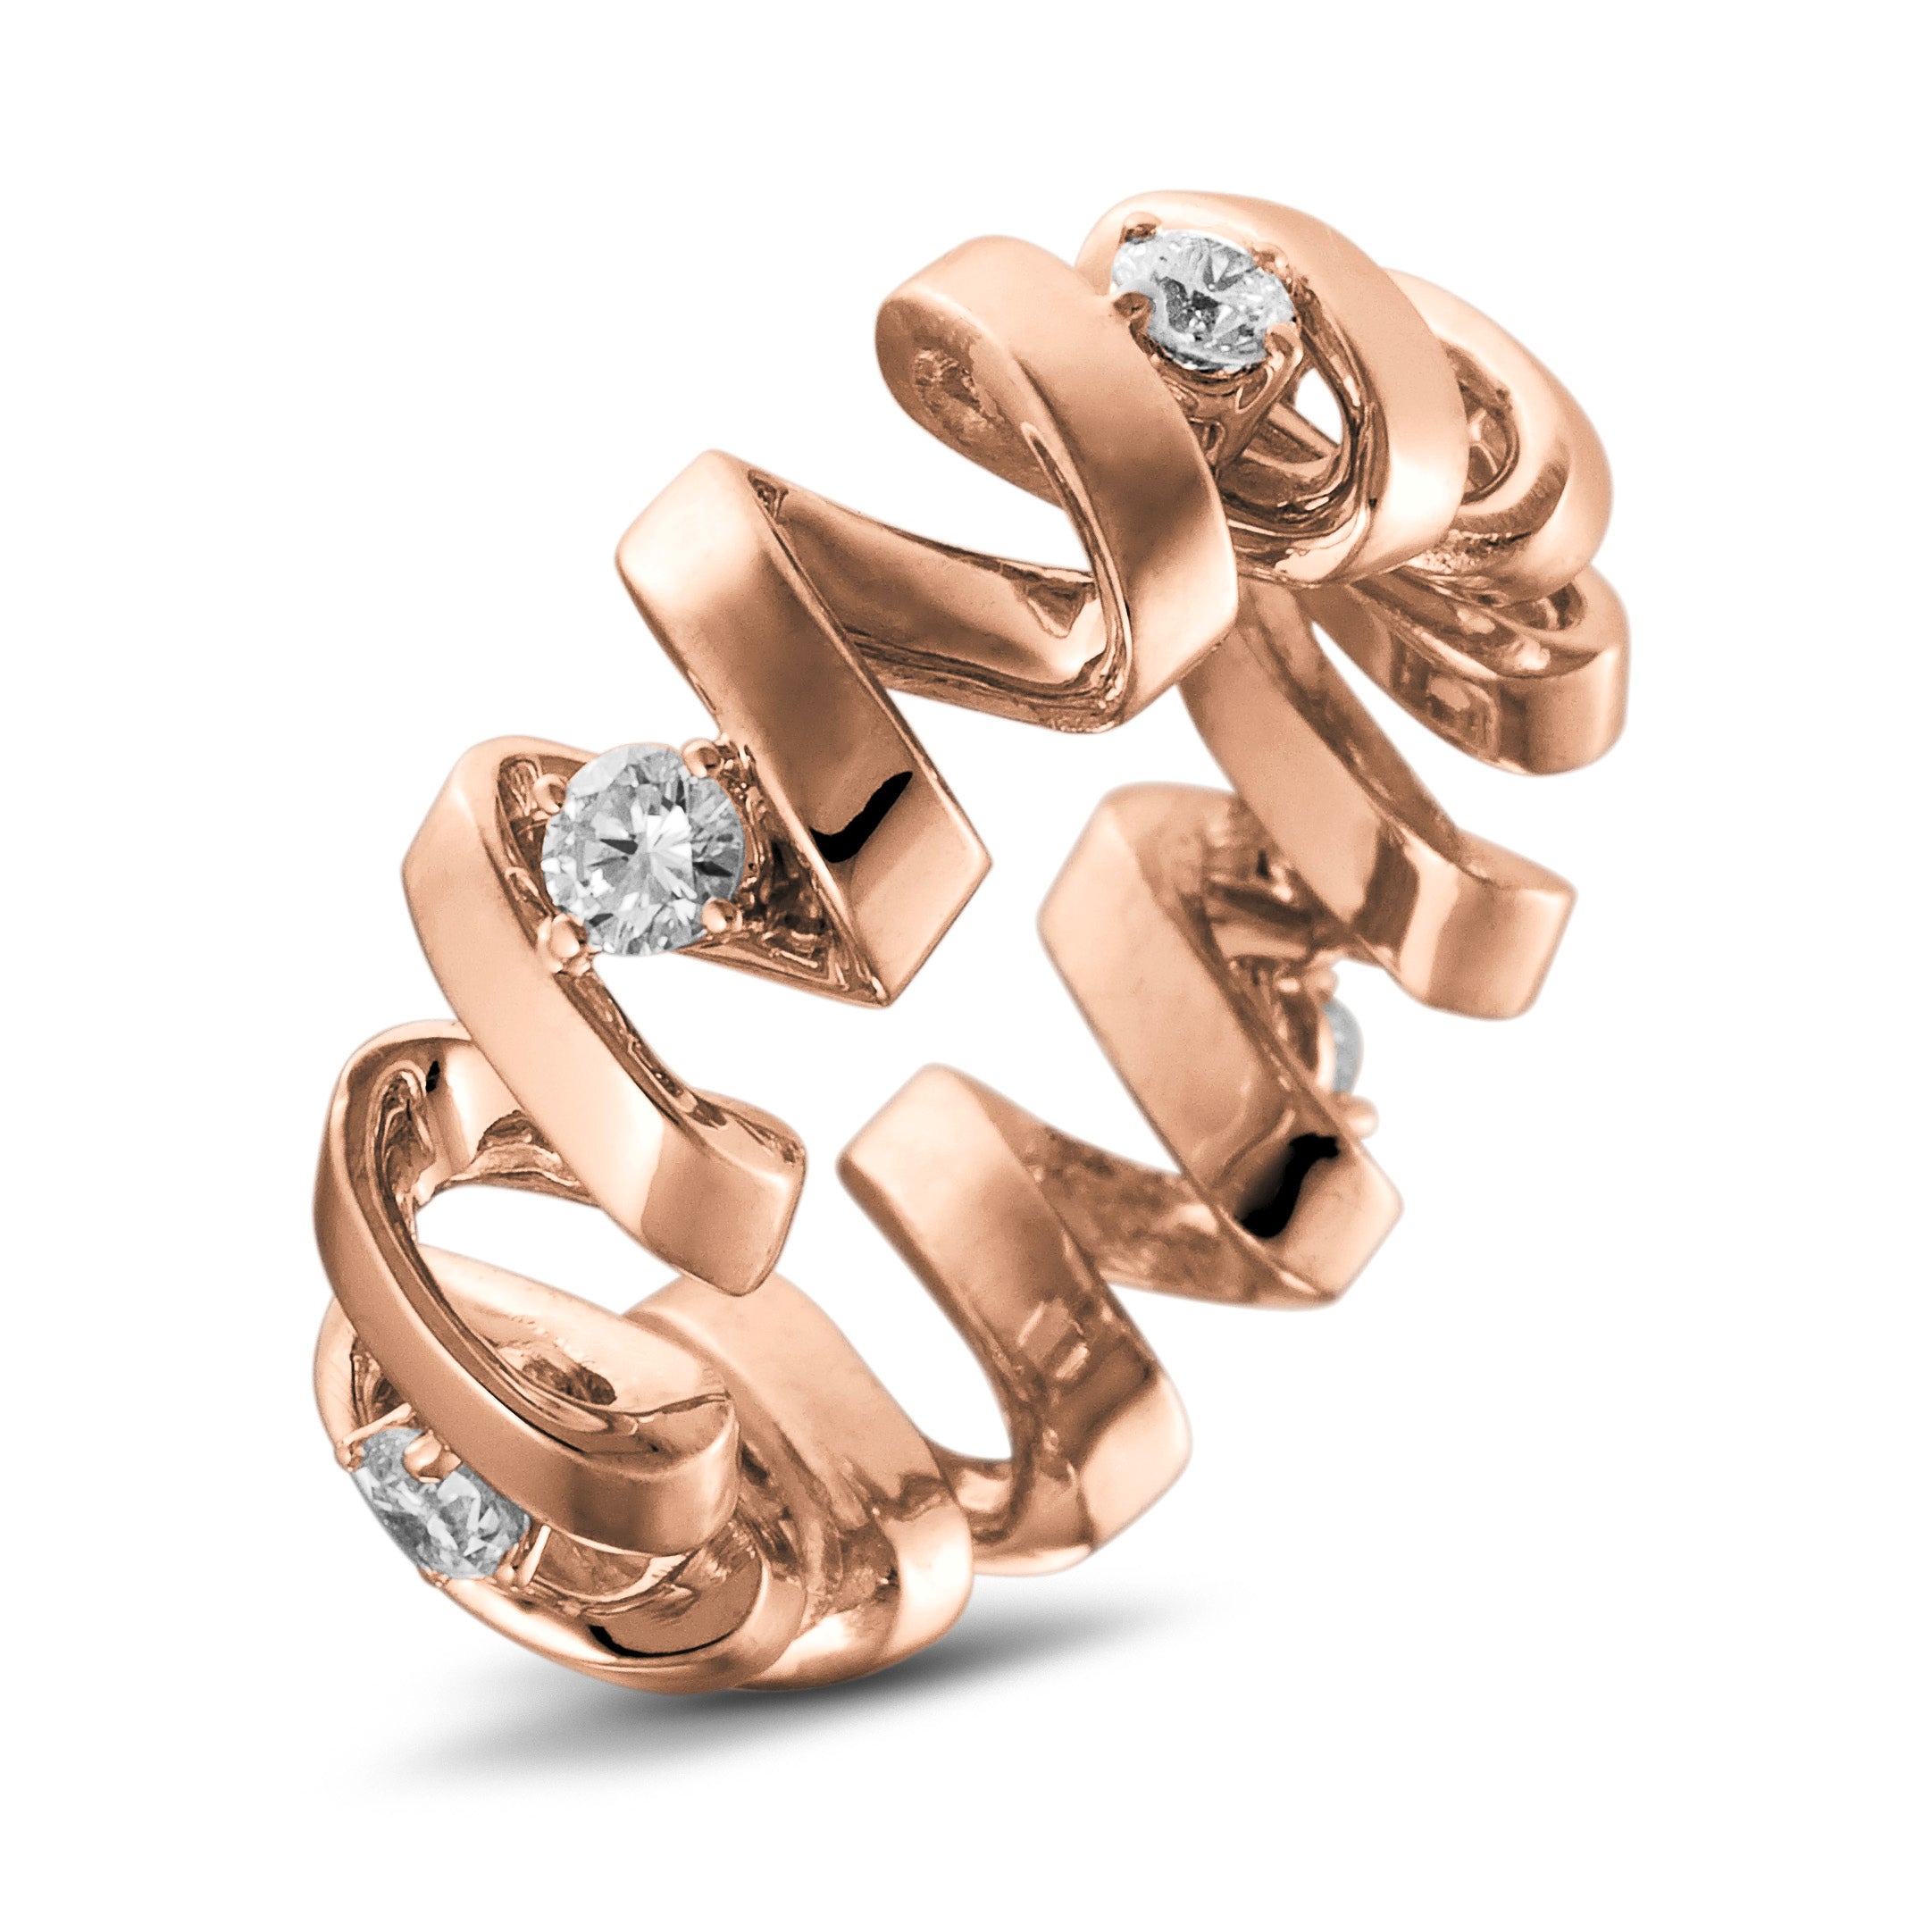 Alliance Tourbillon de la Vie "Femme" en or 18 carats empierrée de diamants 0,60 carats